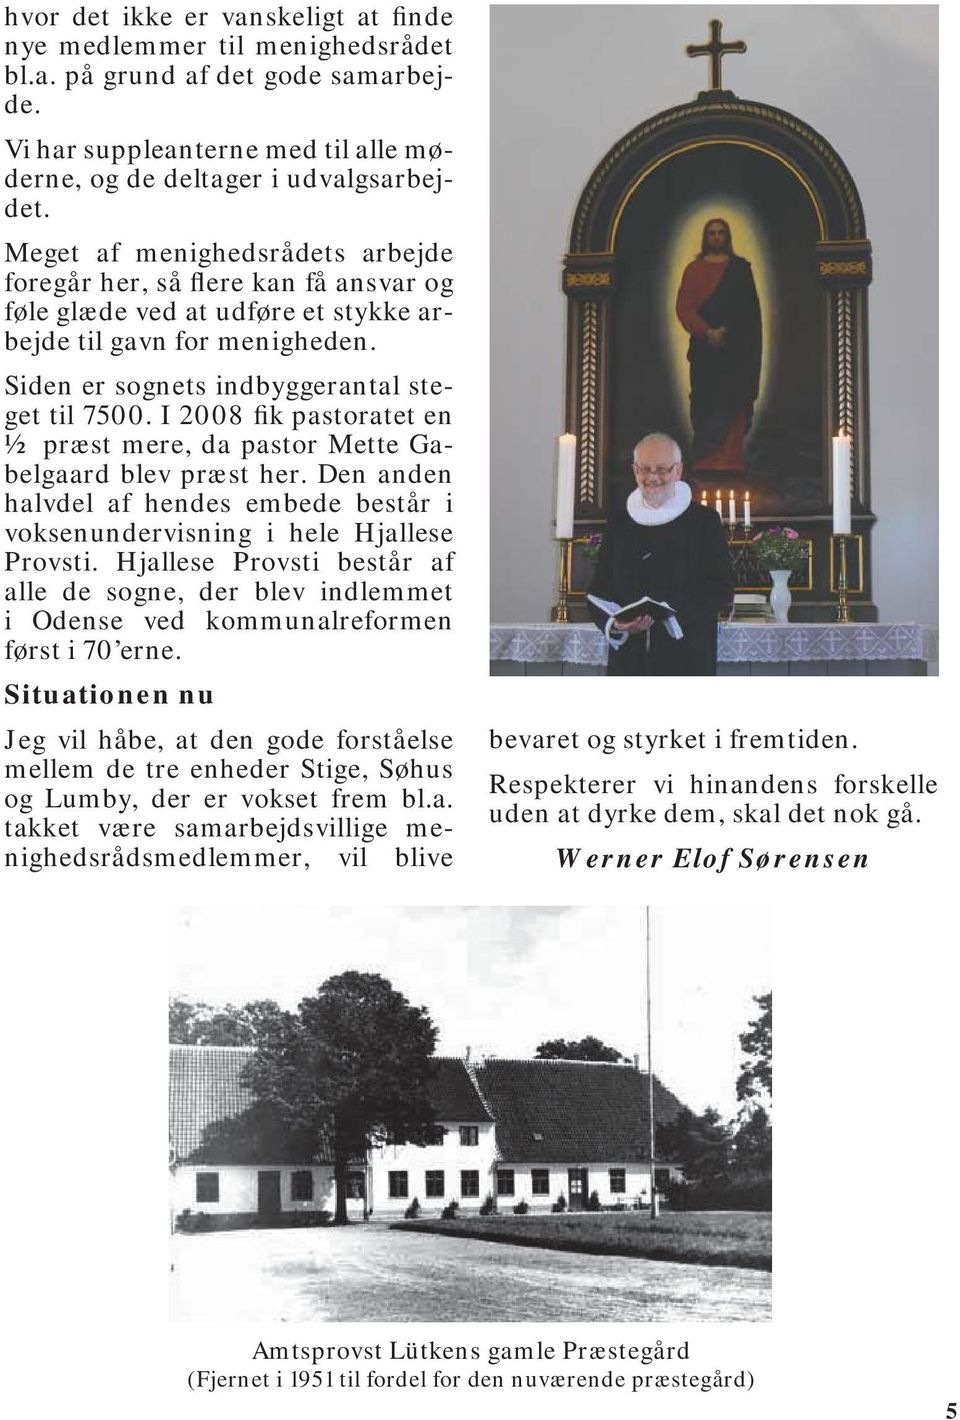 I 2008 fik pastoratet en ½ præst mere, da pastor Mette Gabelgaard blev præst her. Den anden halvdel af hendes embede består i voksenundervisning i hele Hjallese Provsti.